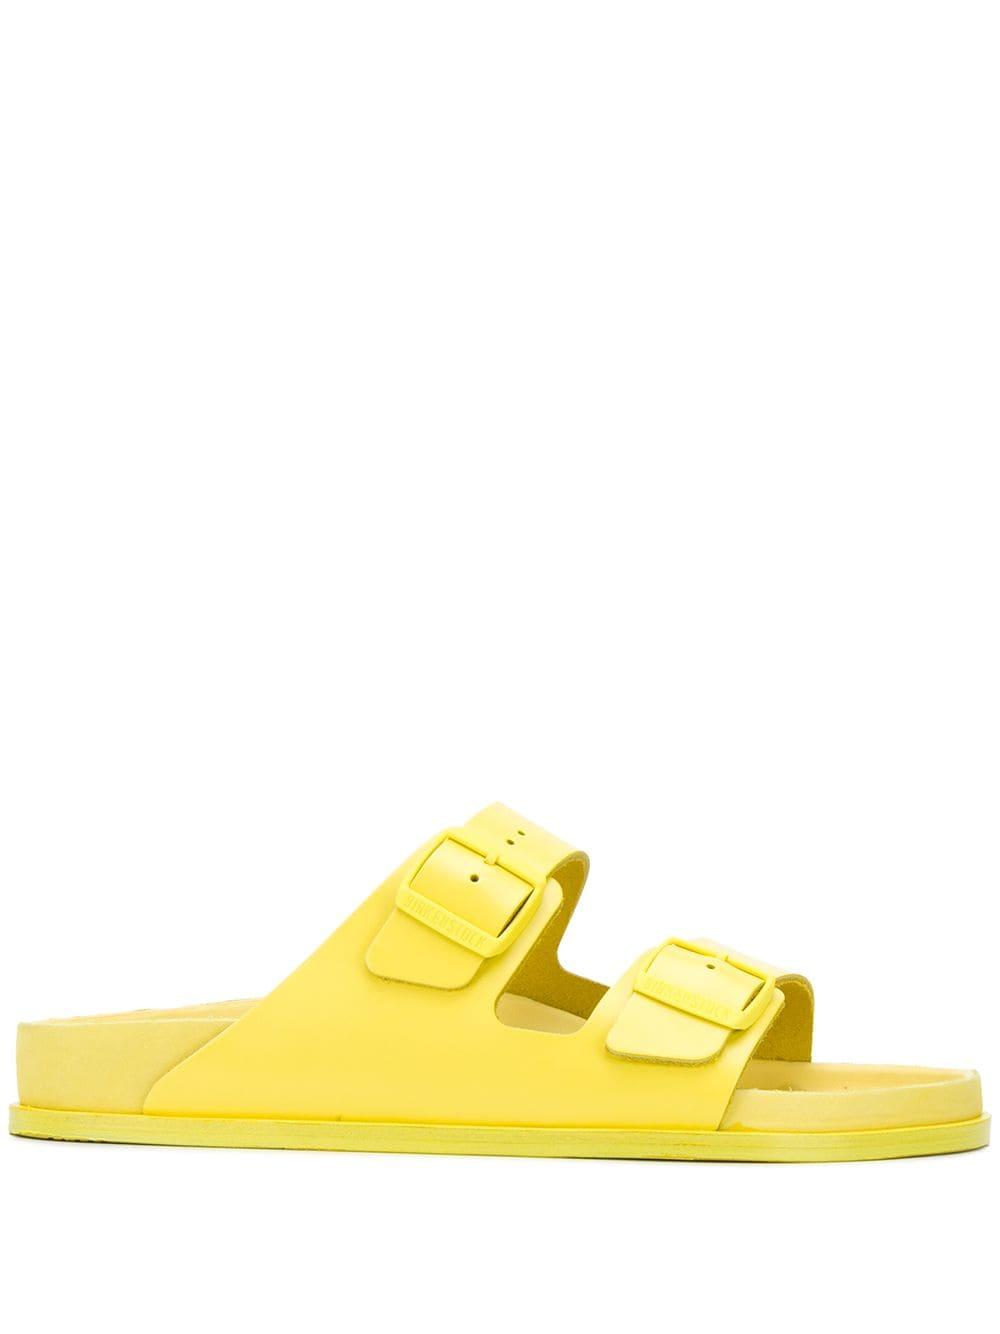 Birkenstock Leather Premium Sandals in Yellow for Men - Lyst